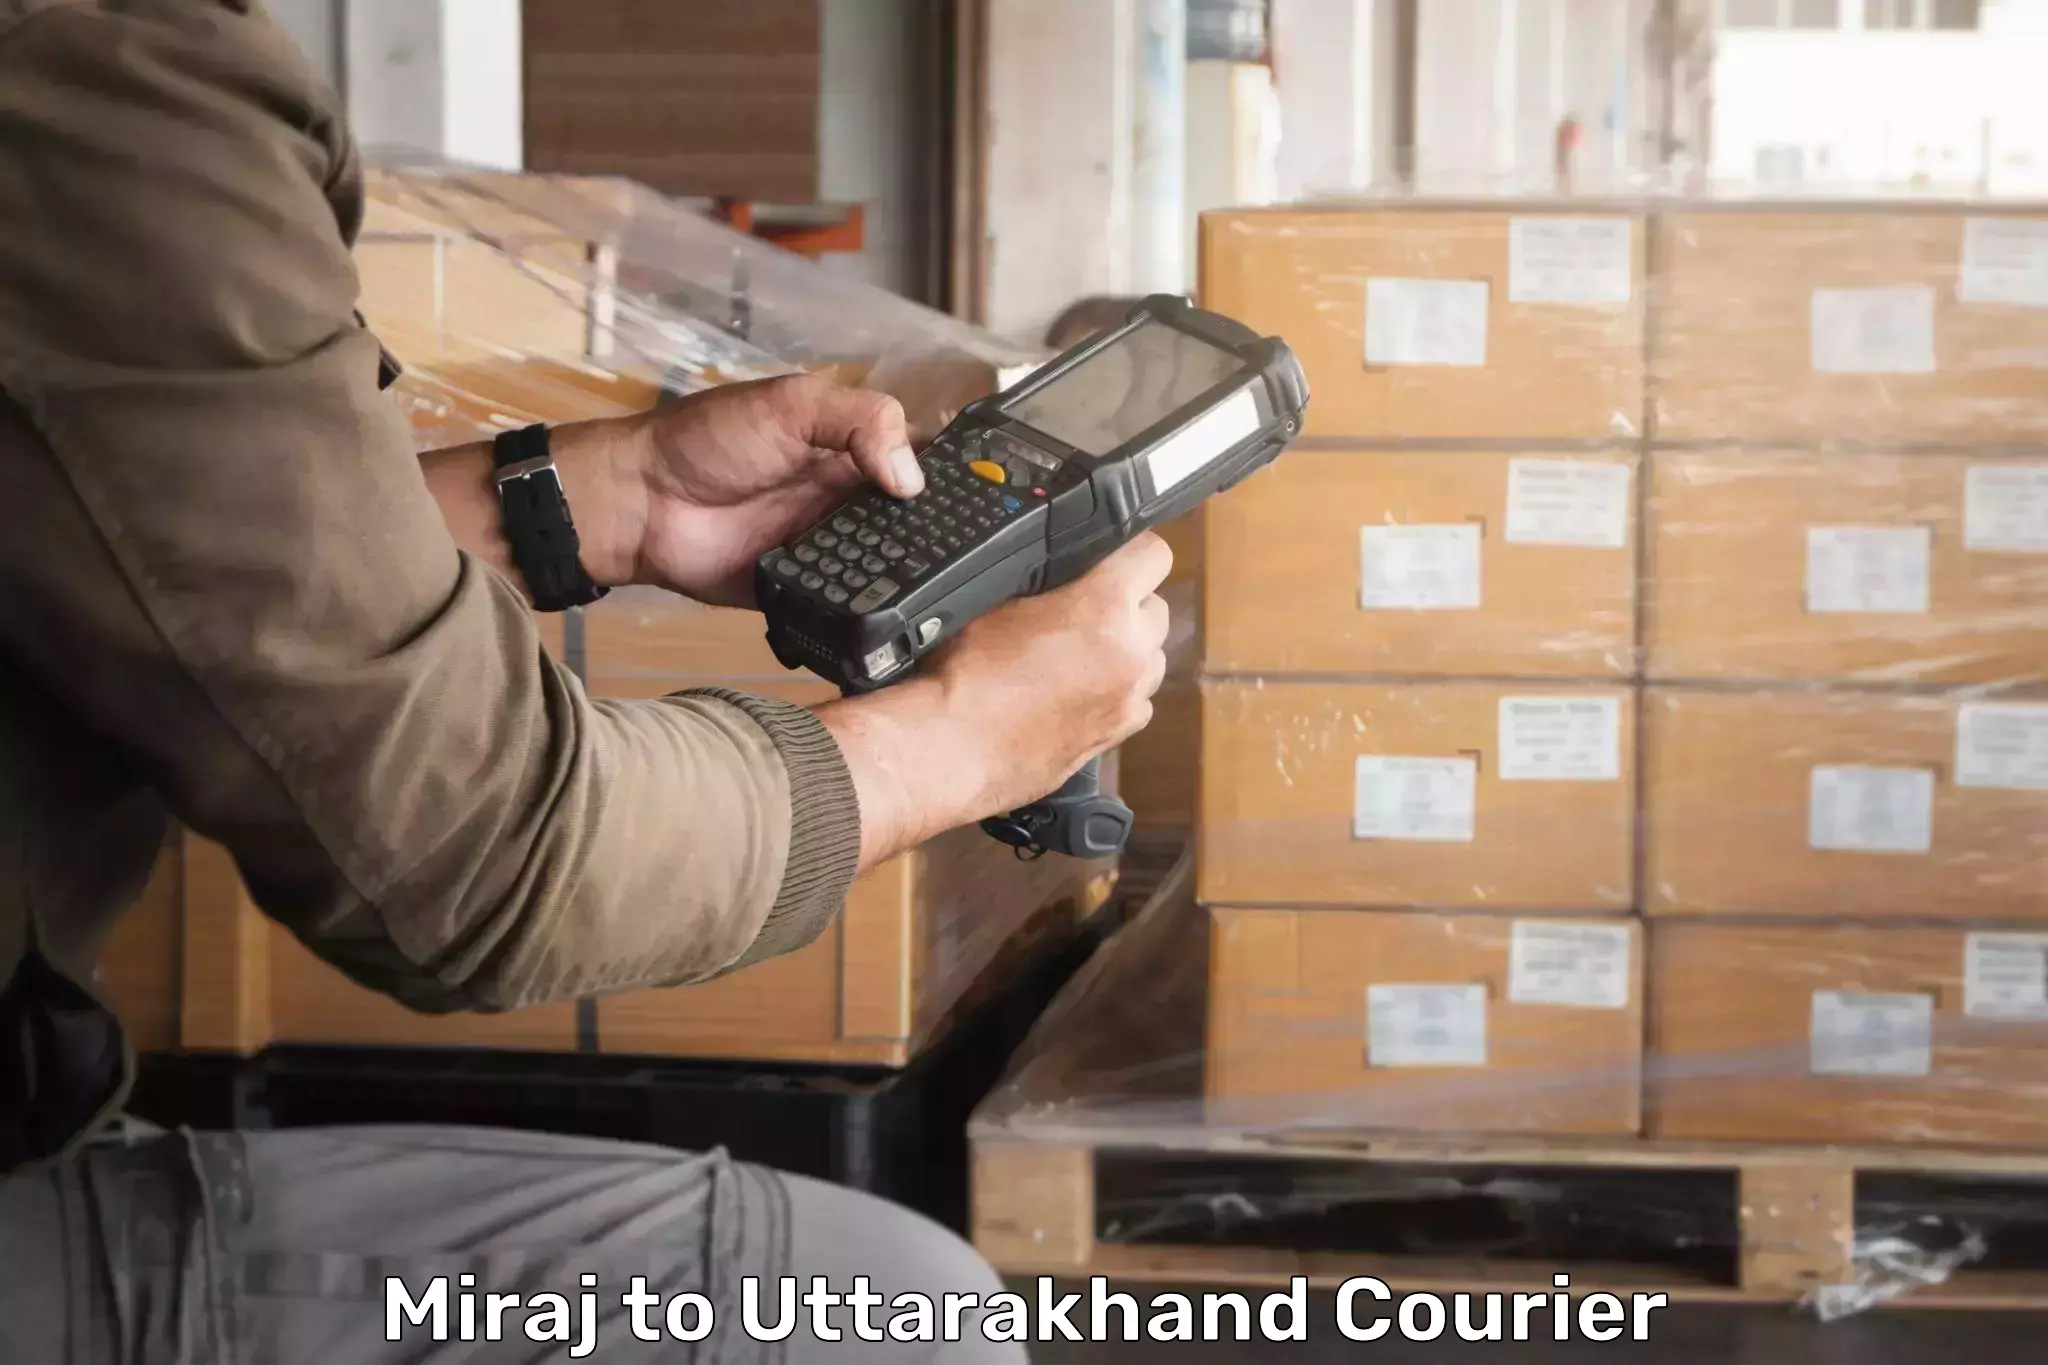 Pharmaceutical courier Miraj to Uttarkashi